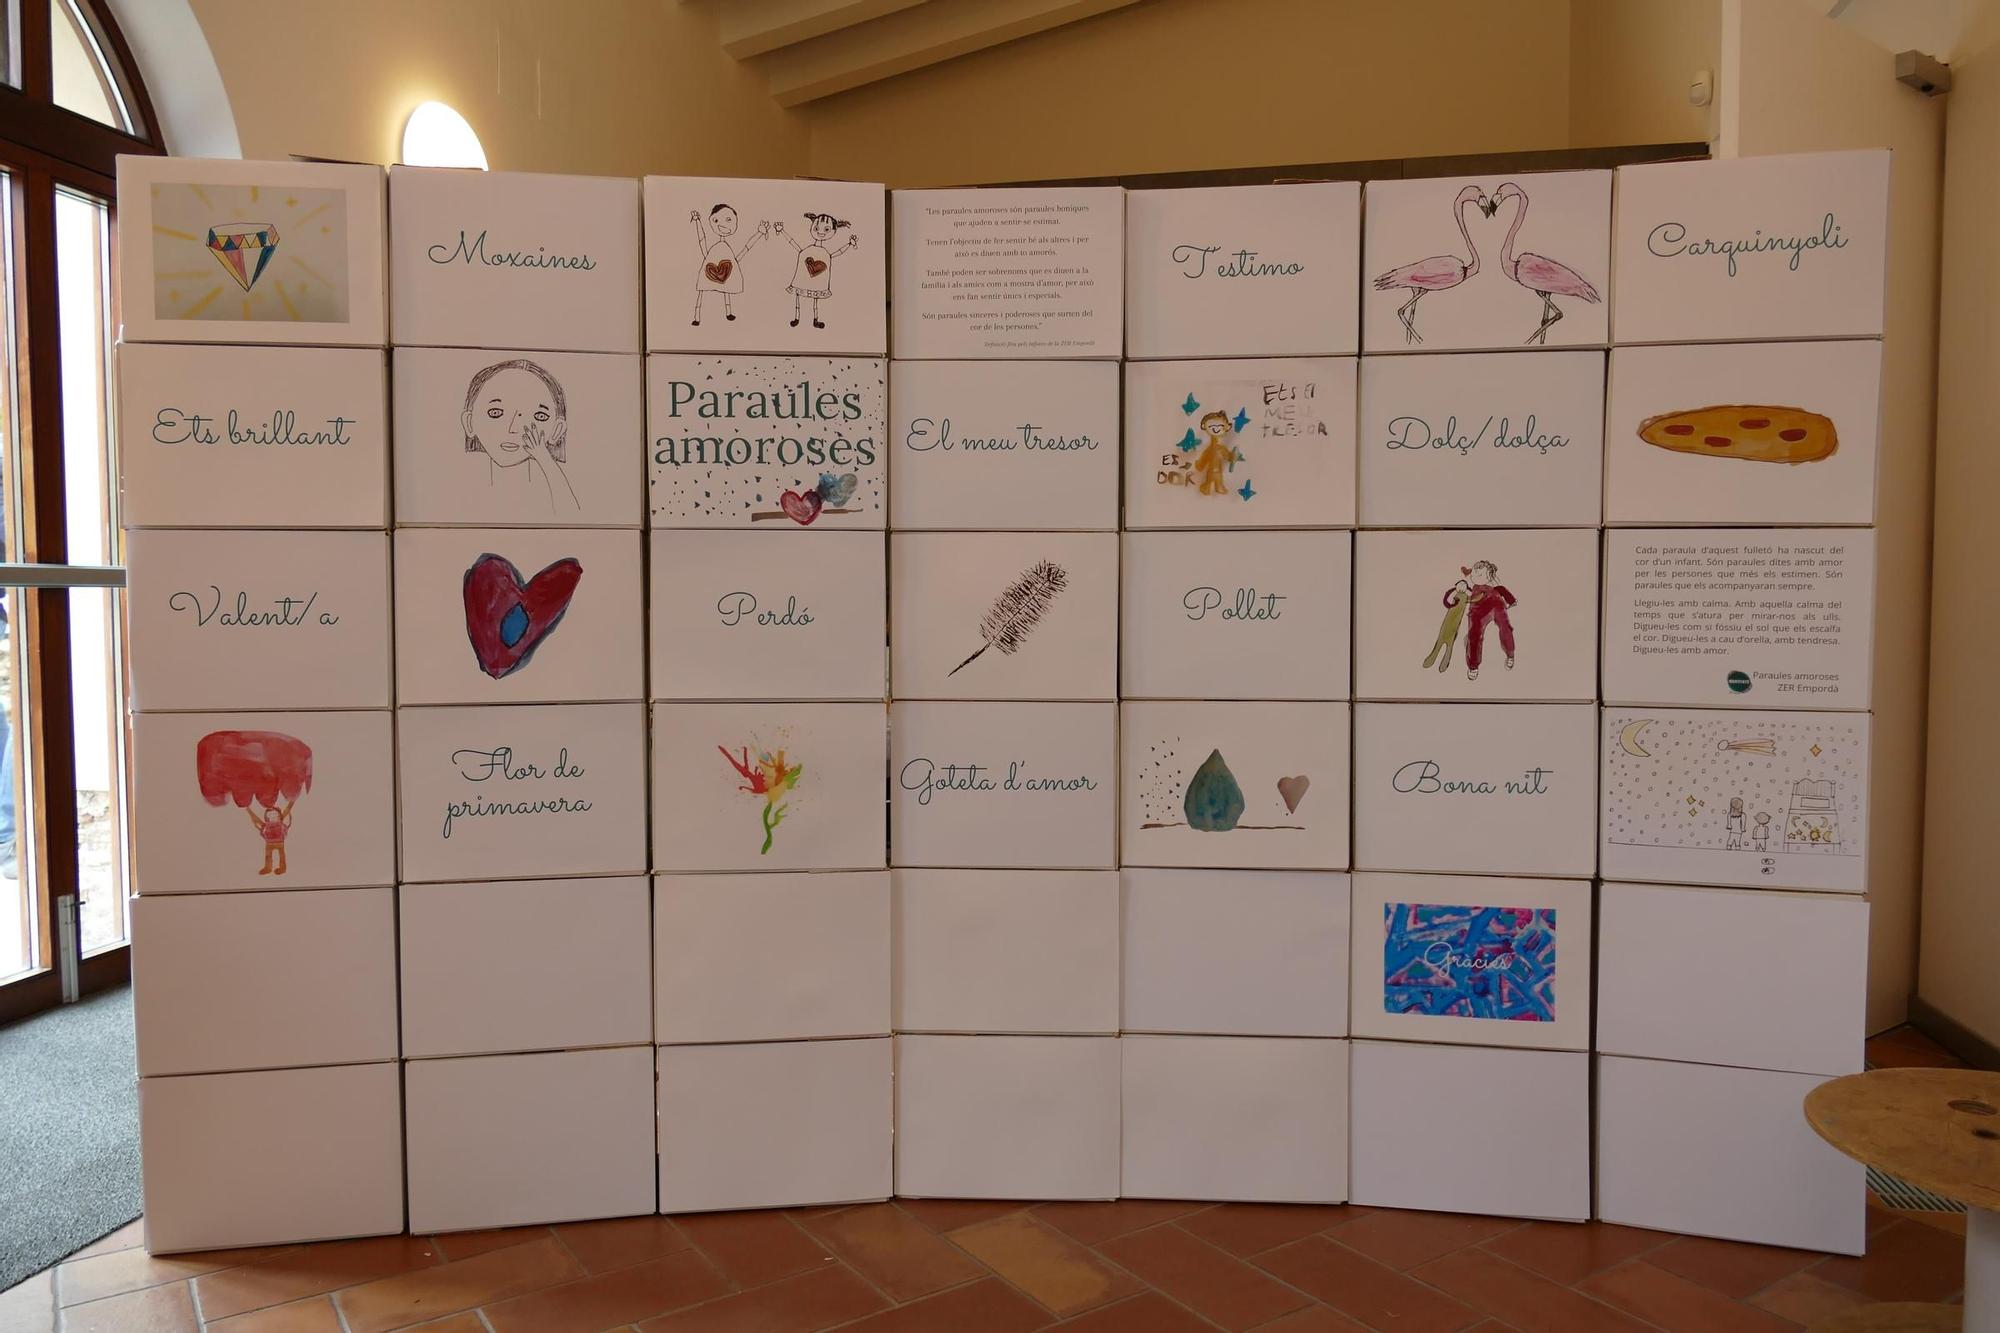 Els infants de la ZER Empordà presenten el Projecte Identitats als Caputxins de Figueres